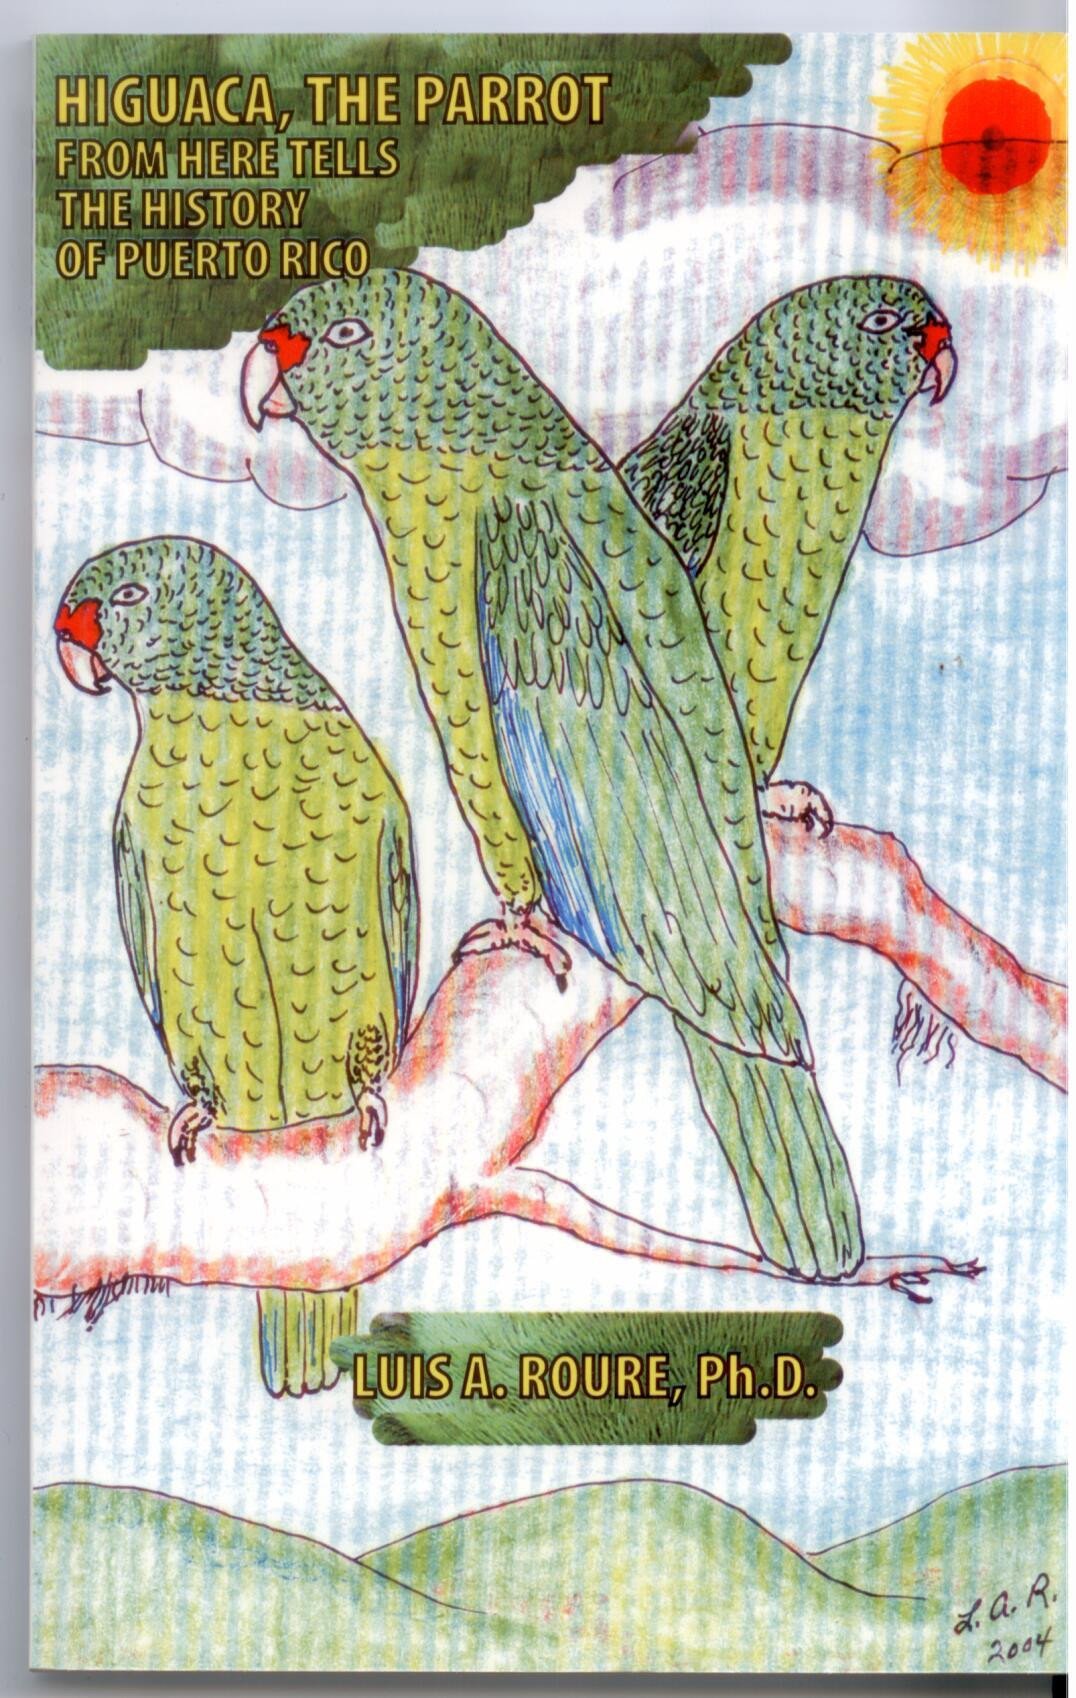 Higuaca, the parrot - D'Autores